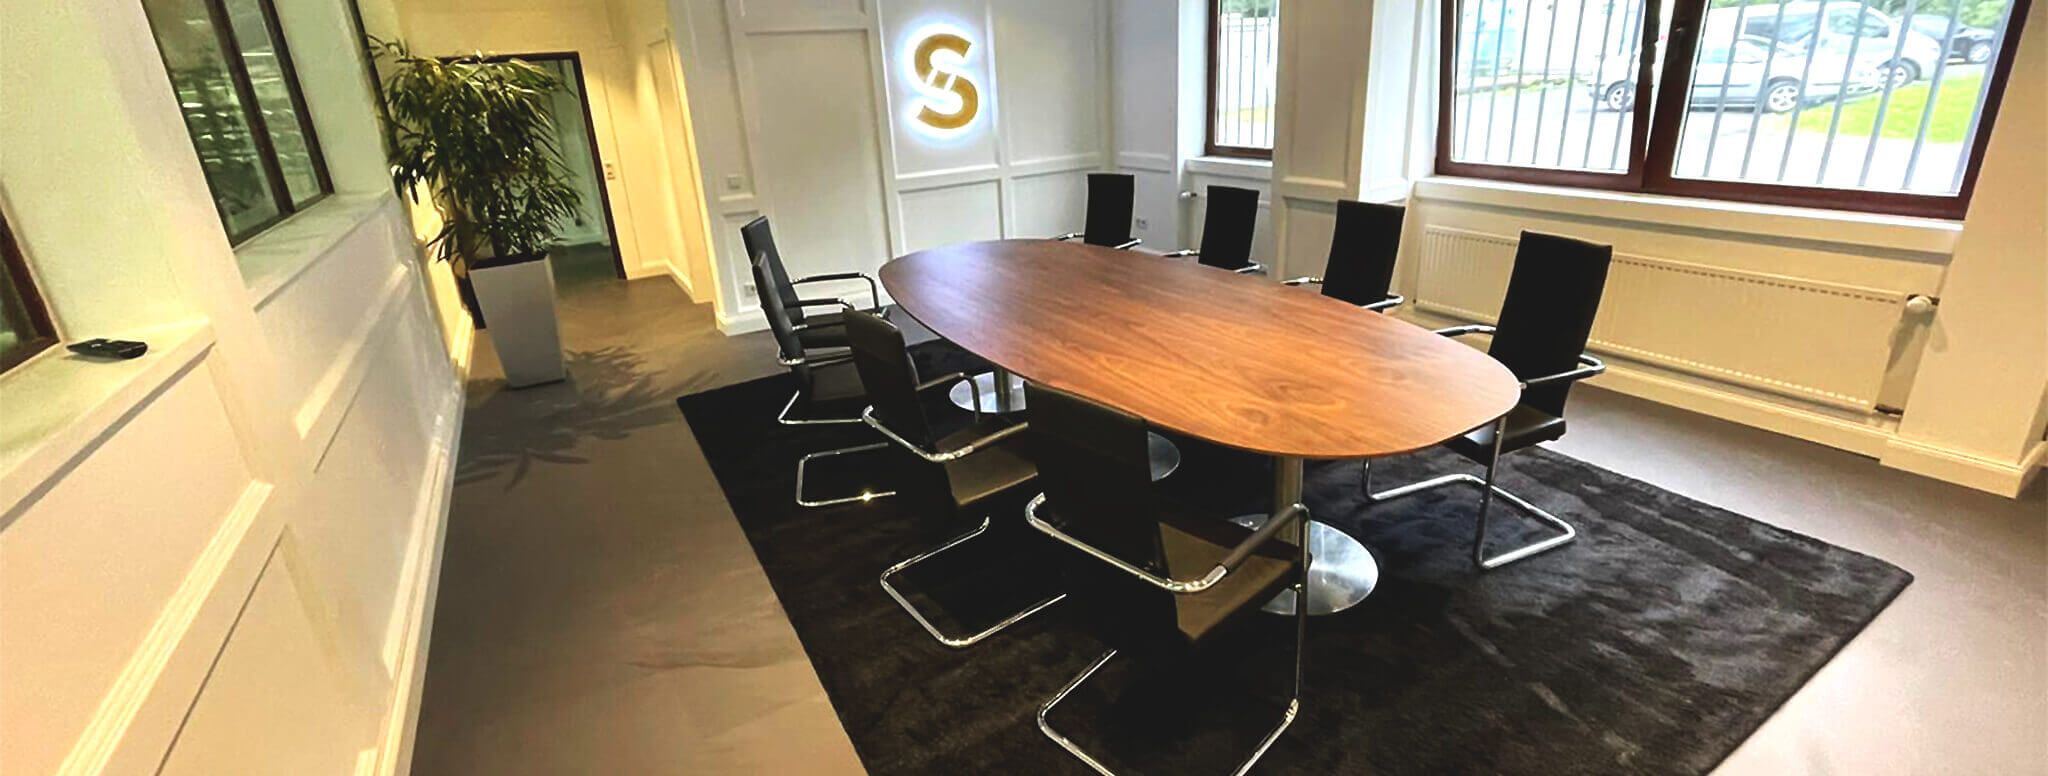 Teppichboden im Büro mit Stühlen und einem Tisch